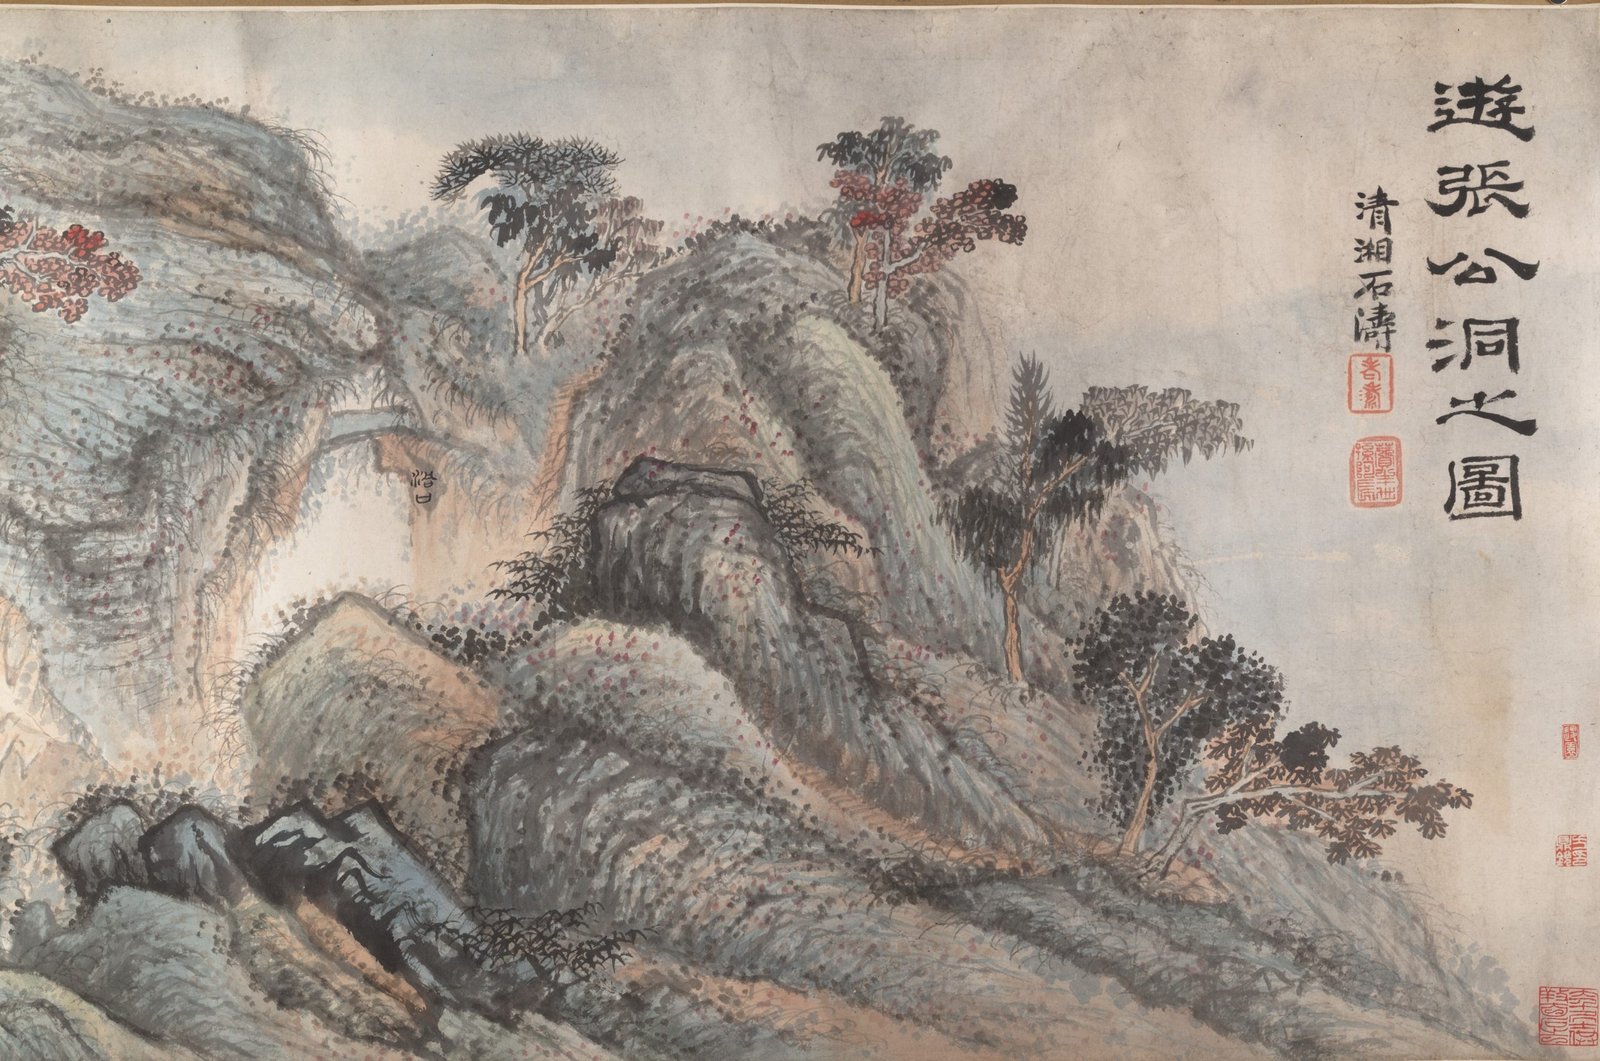 Excursion à la grotte de Zhang Gong, 1700, Shitao